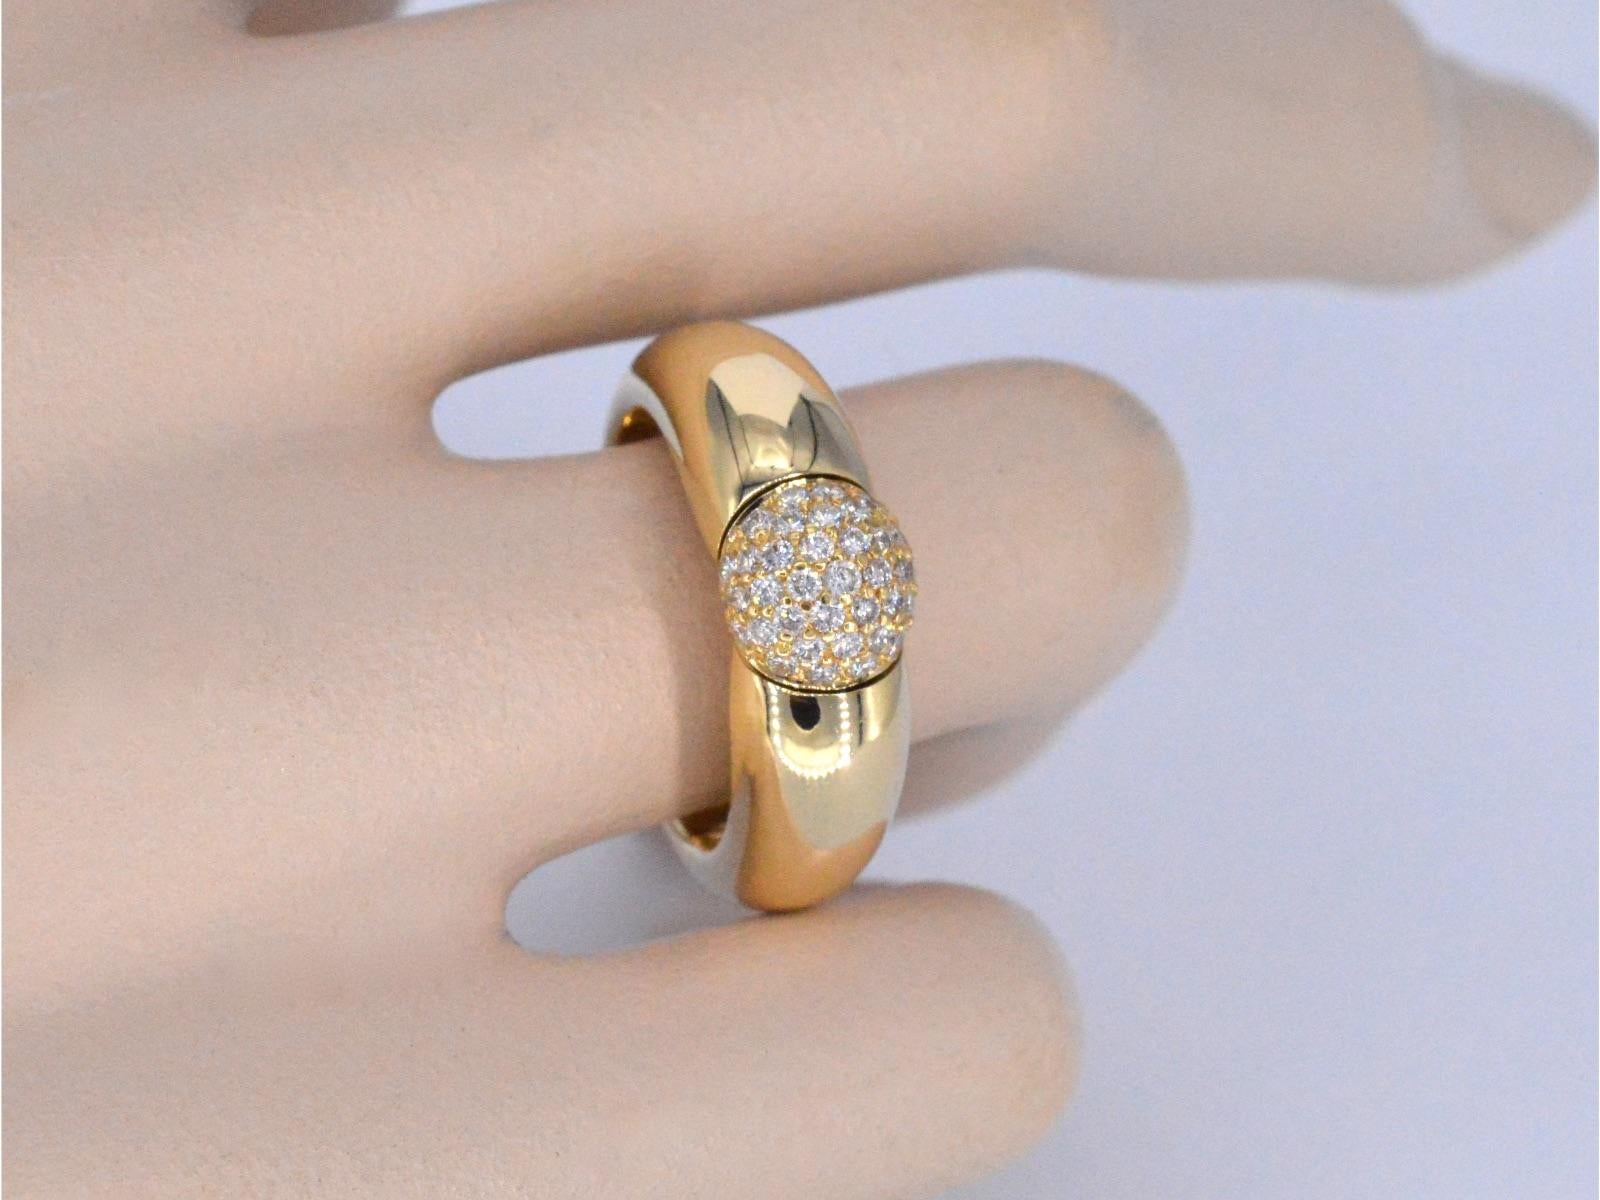 Ein atemberaubender Ring von Lechic, besetzt mit natürlichen Diamanten von insgesamt 0,50 Karat. Diese exquisiten Diamanten, die fachmännisch mit Brillantfacetten geschliffen sind, bestechen durch die Farbe D-E und die Reinheit VVS, mit einer